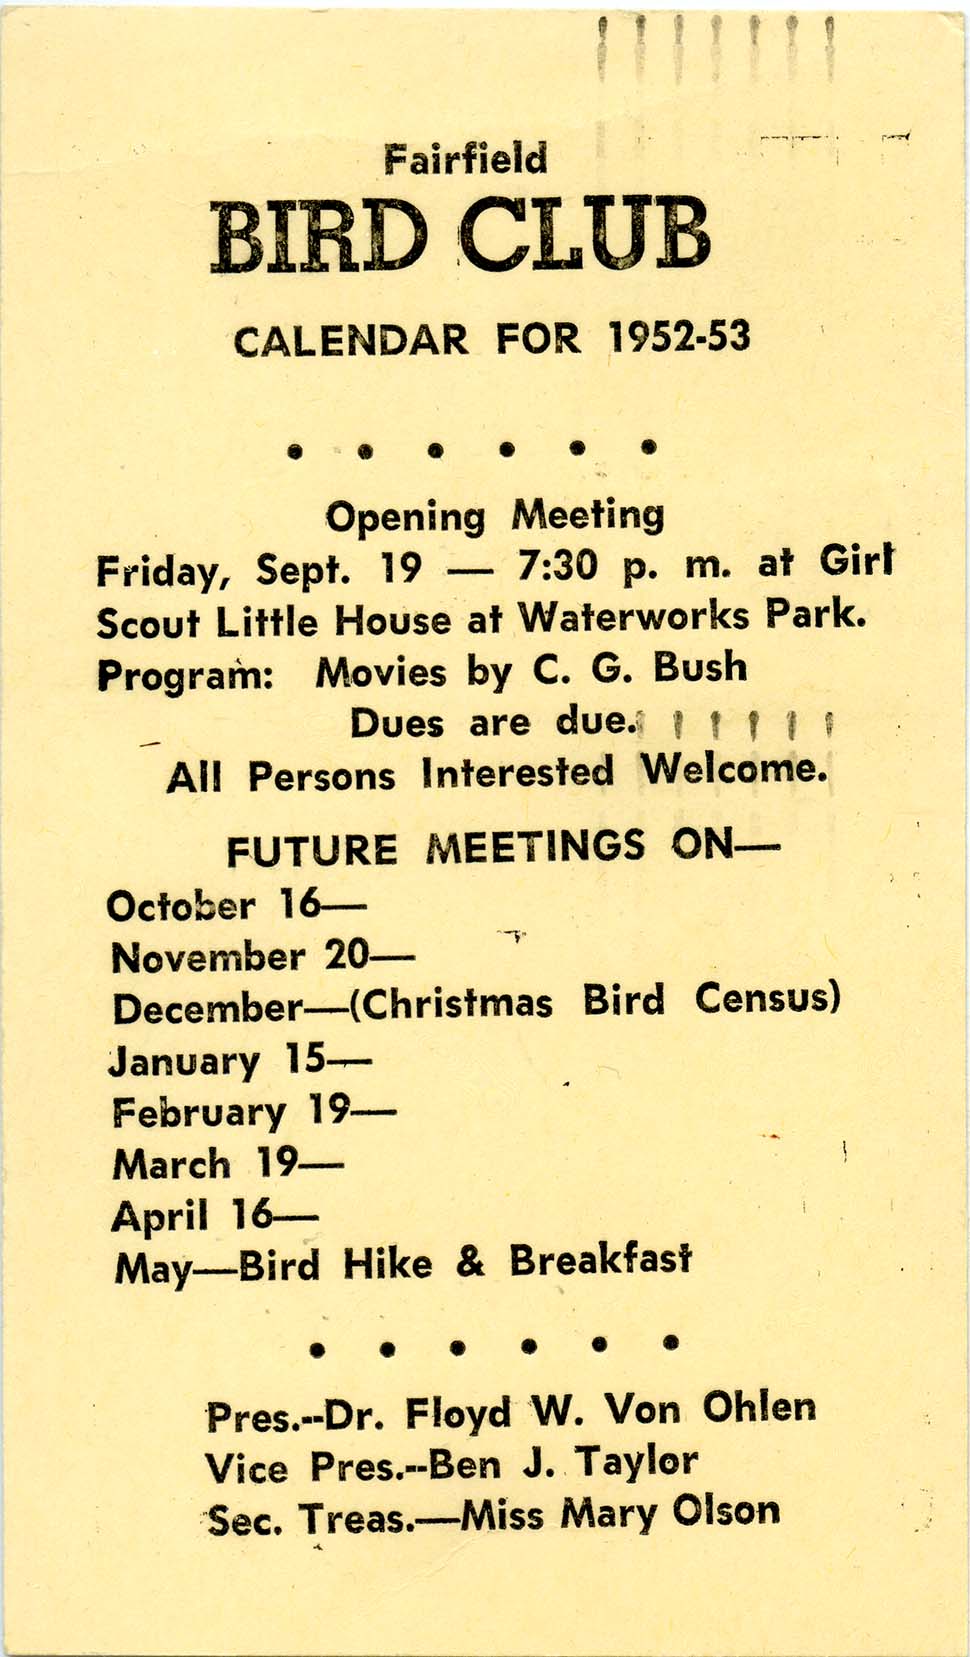 Fairfield Bird Club Calendar for 1952-53